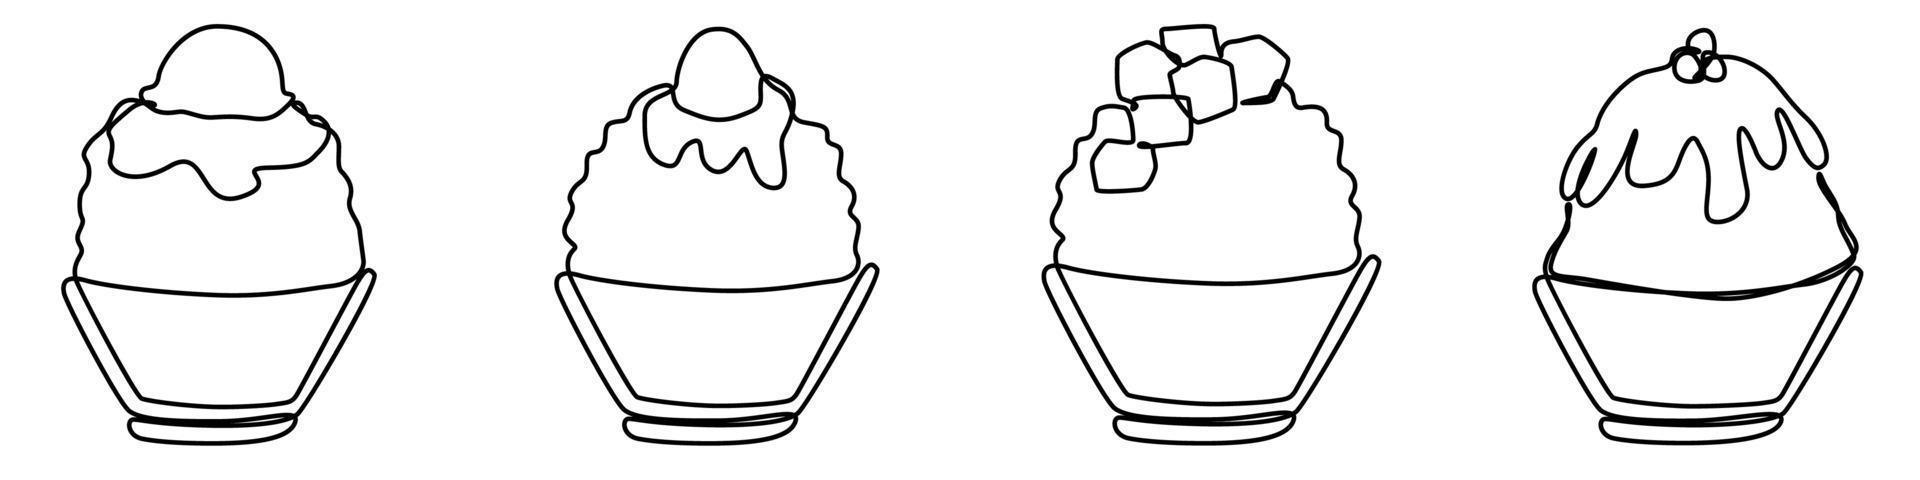 ghiaccio rasato bingsu coreano giapponese stile dolce dolce nel minimo uno continuo linea semplice design stile vettore